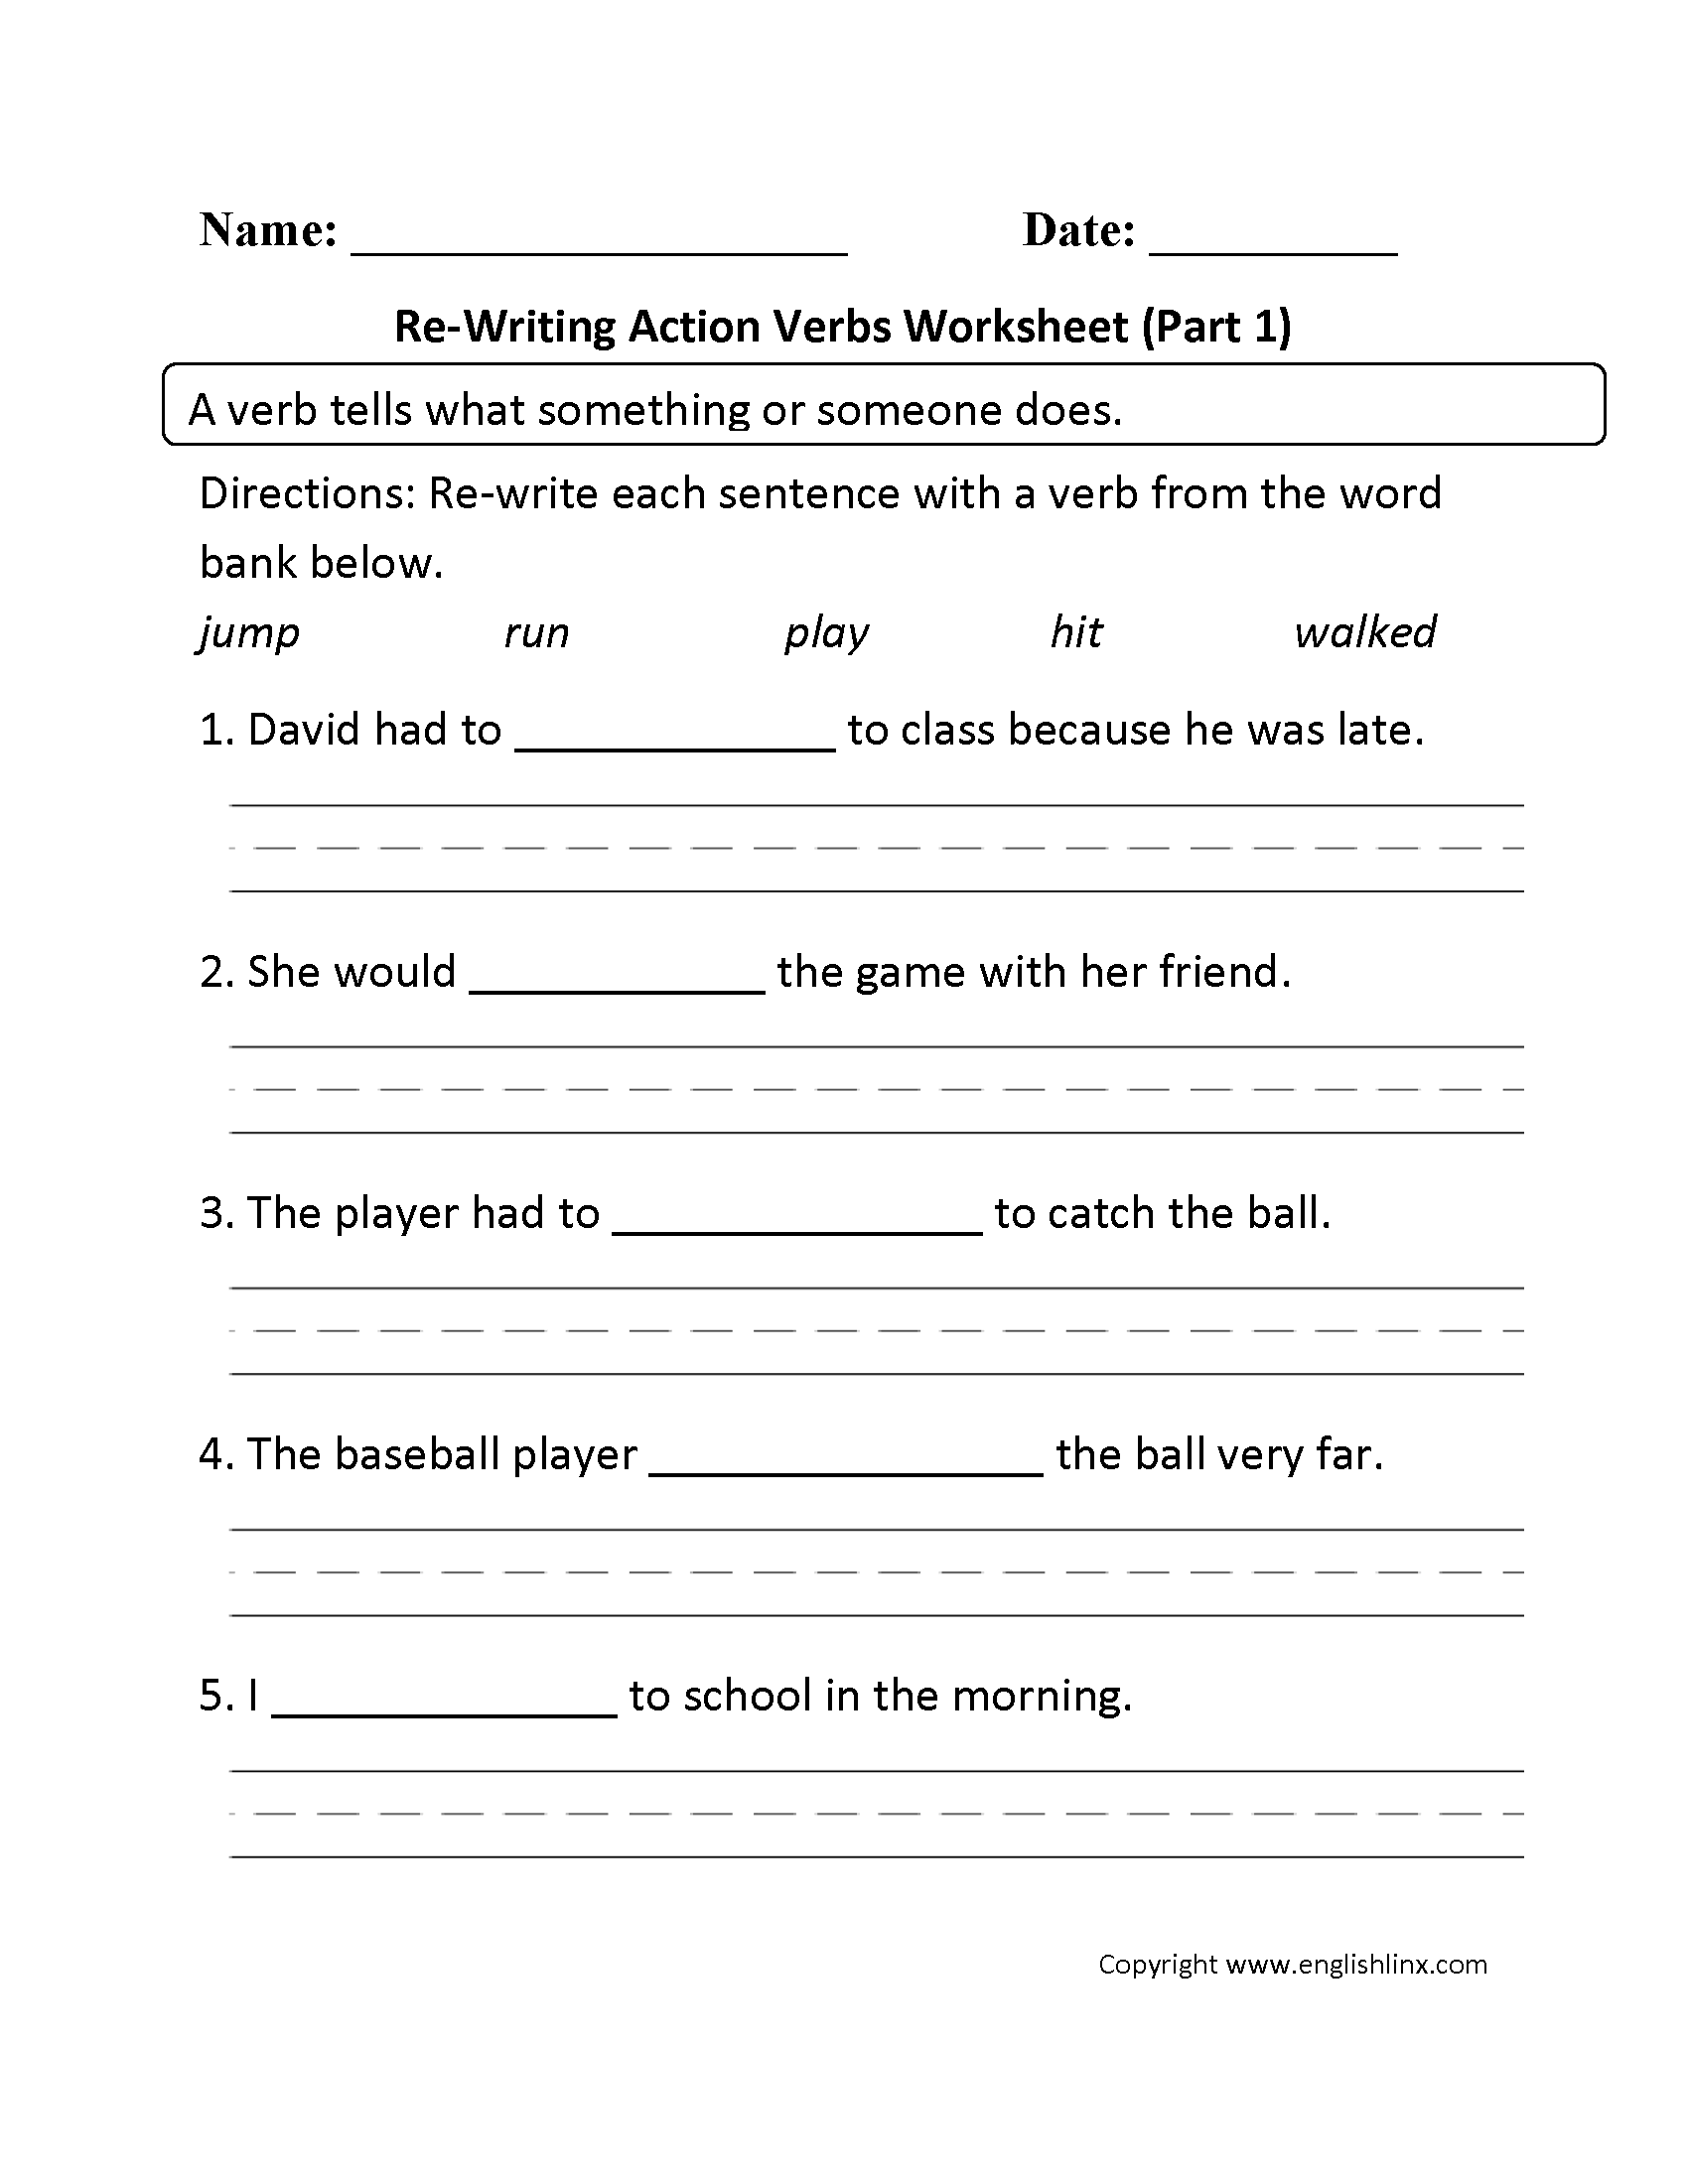 worksheet-verb-worksheets-for-2nd-grade-grass-fedjp-worksheet-study-site